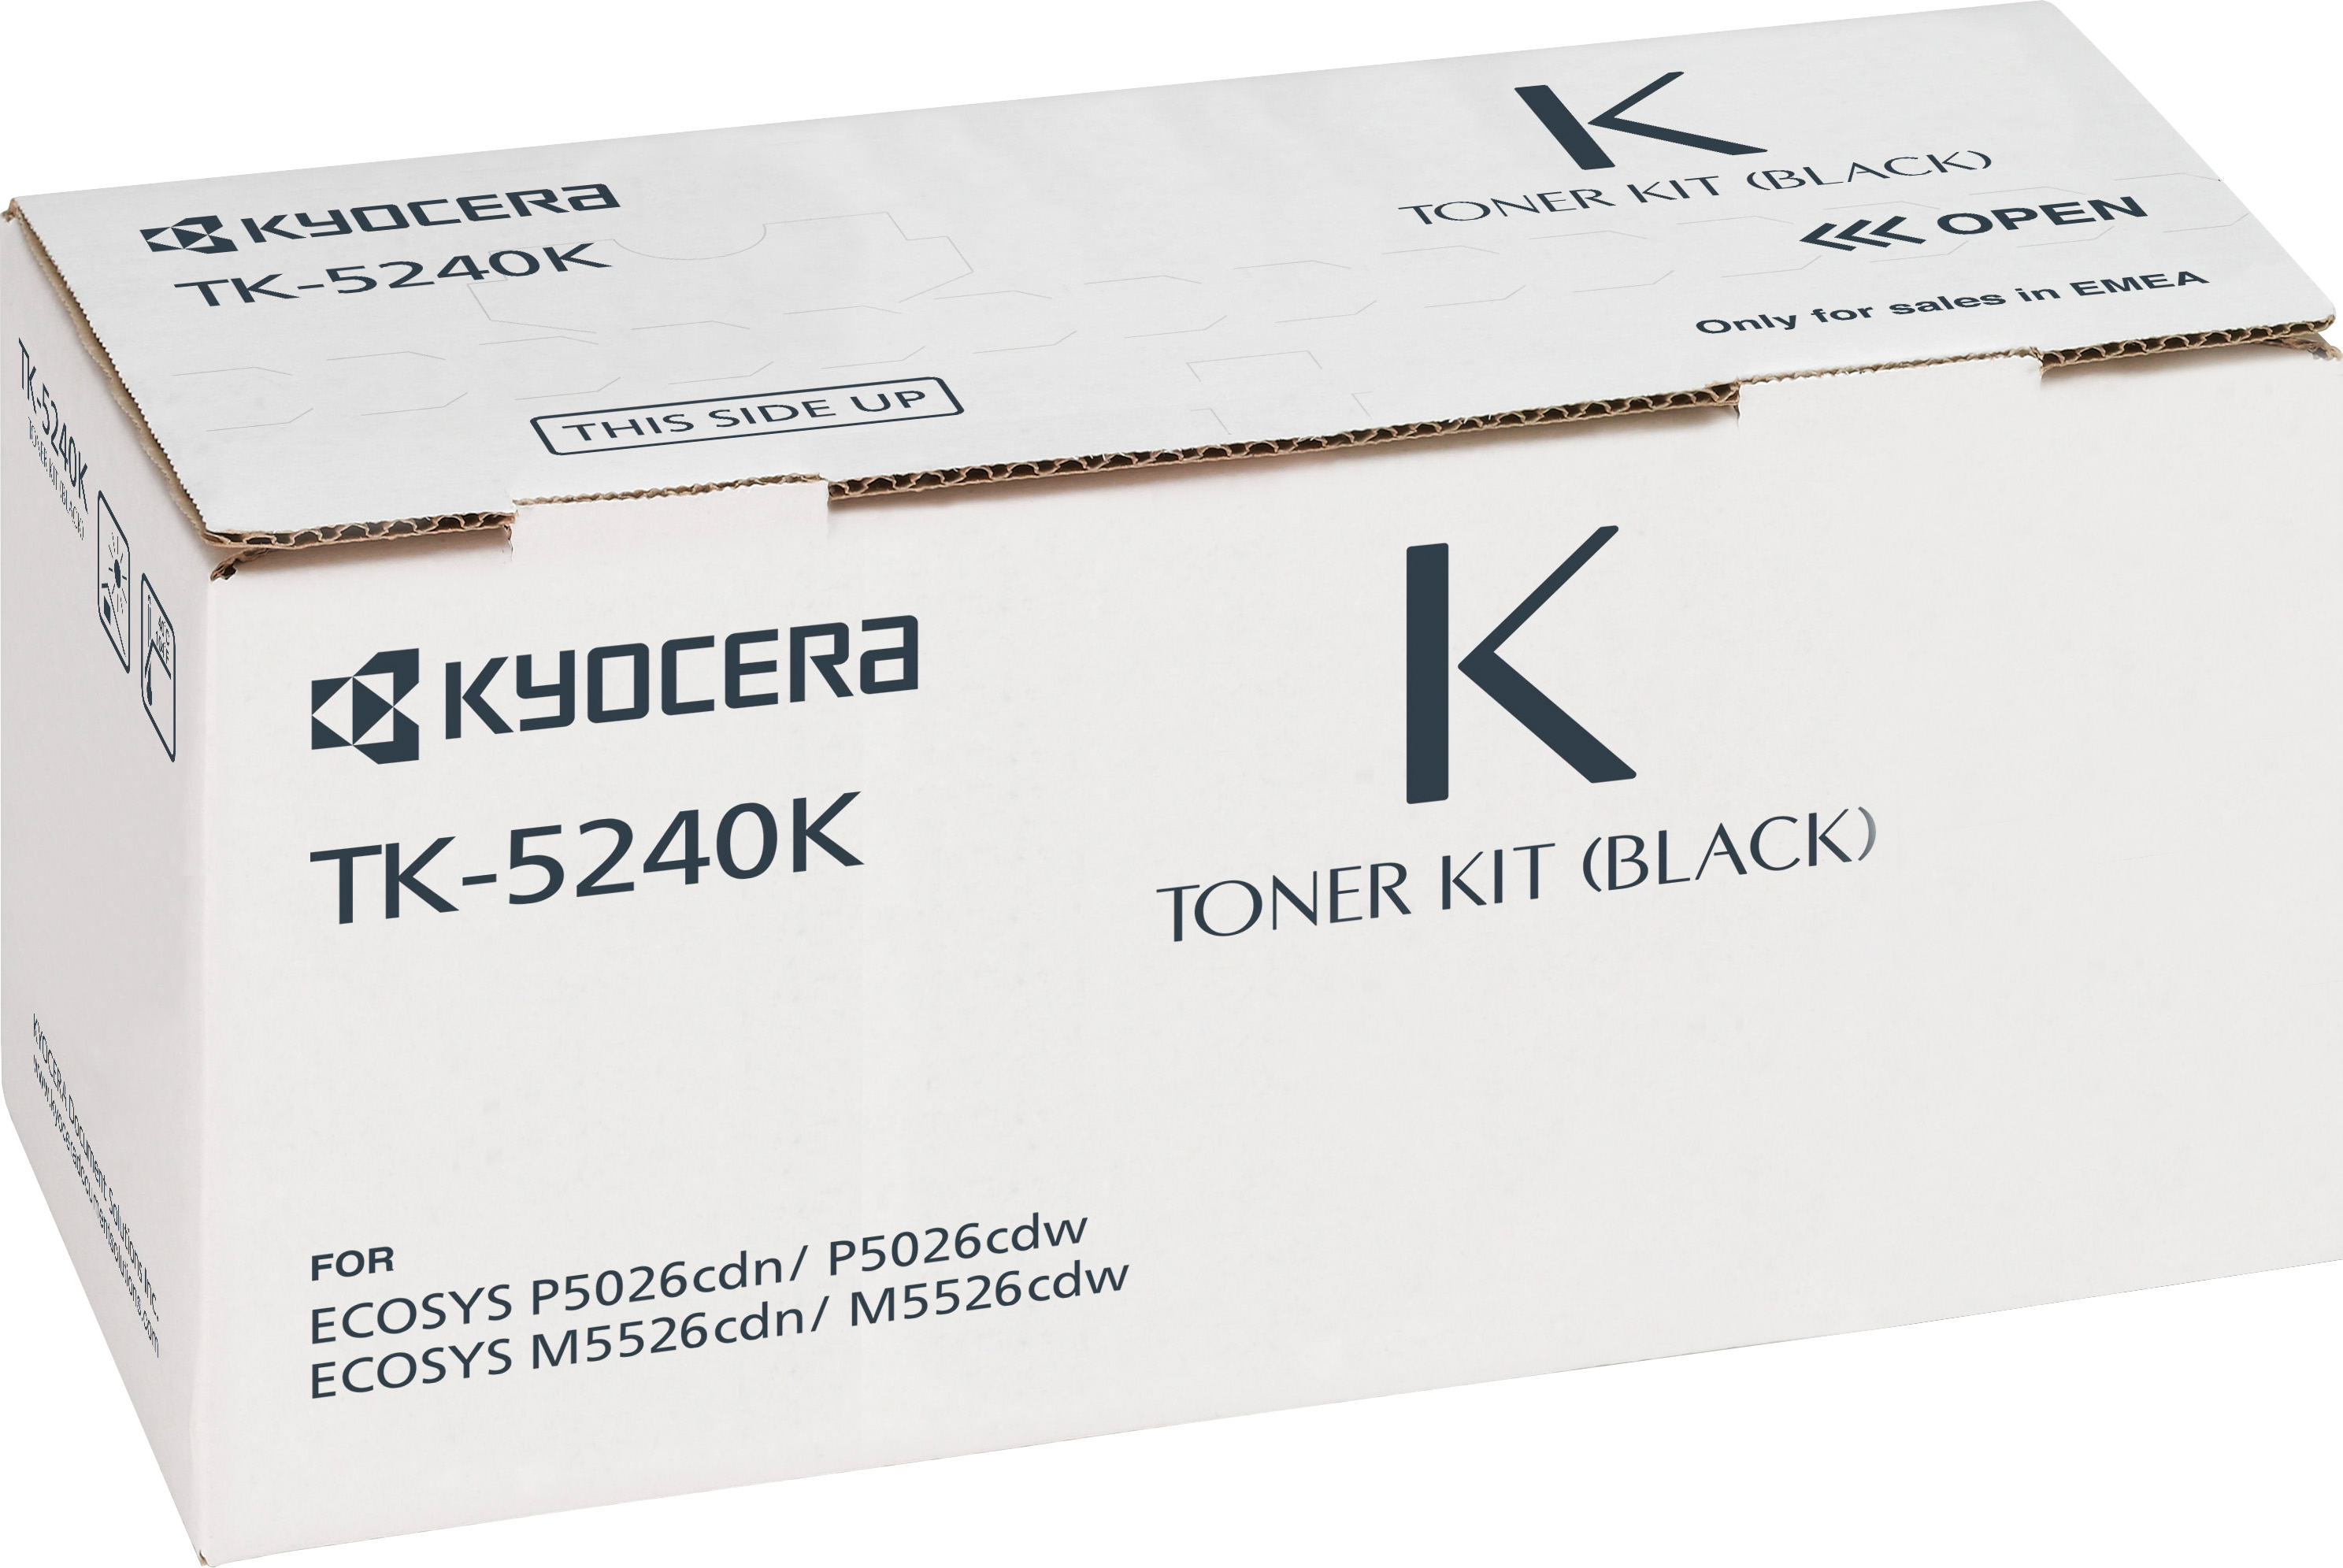 Kyocera Lasertoner TK-5240K schwarz 4.000 Seiten